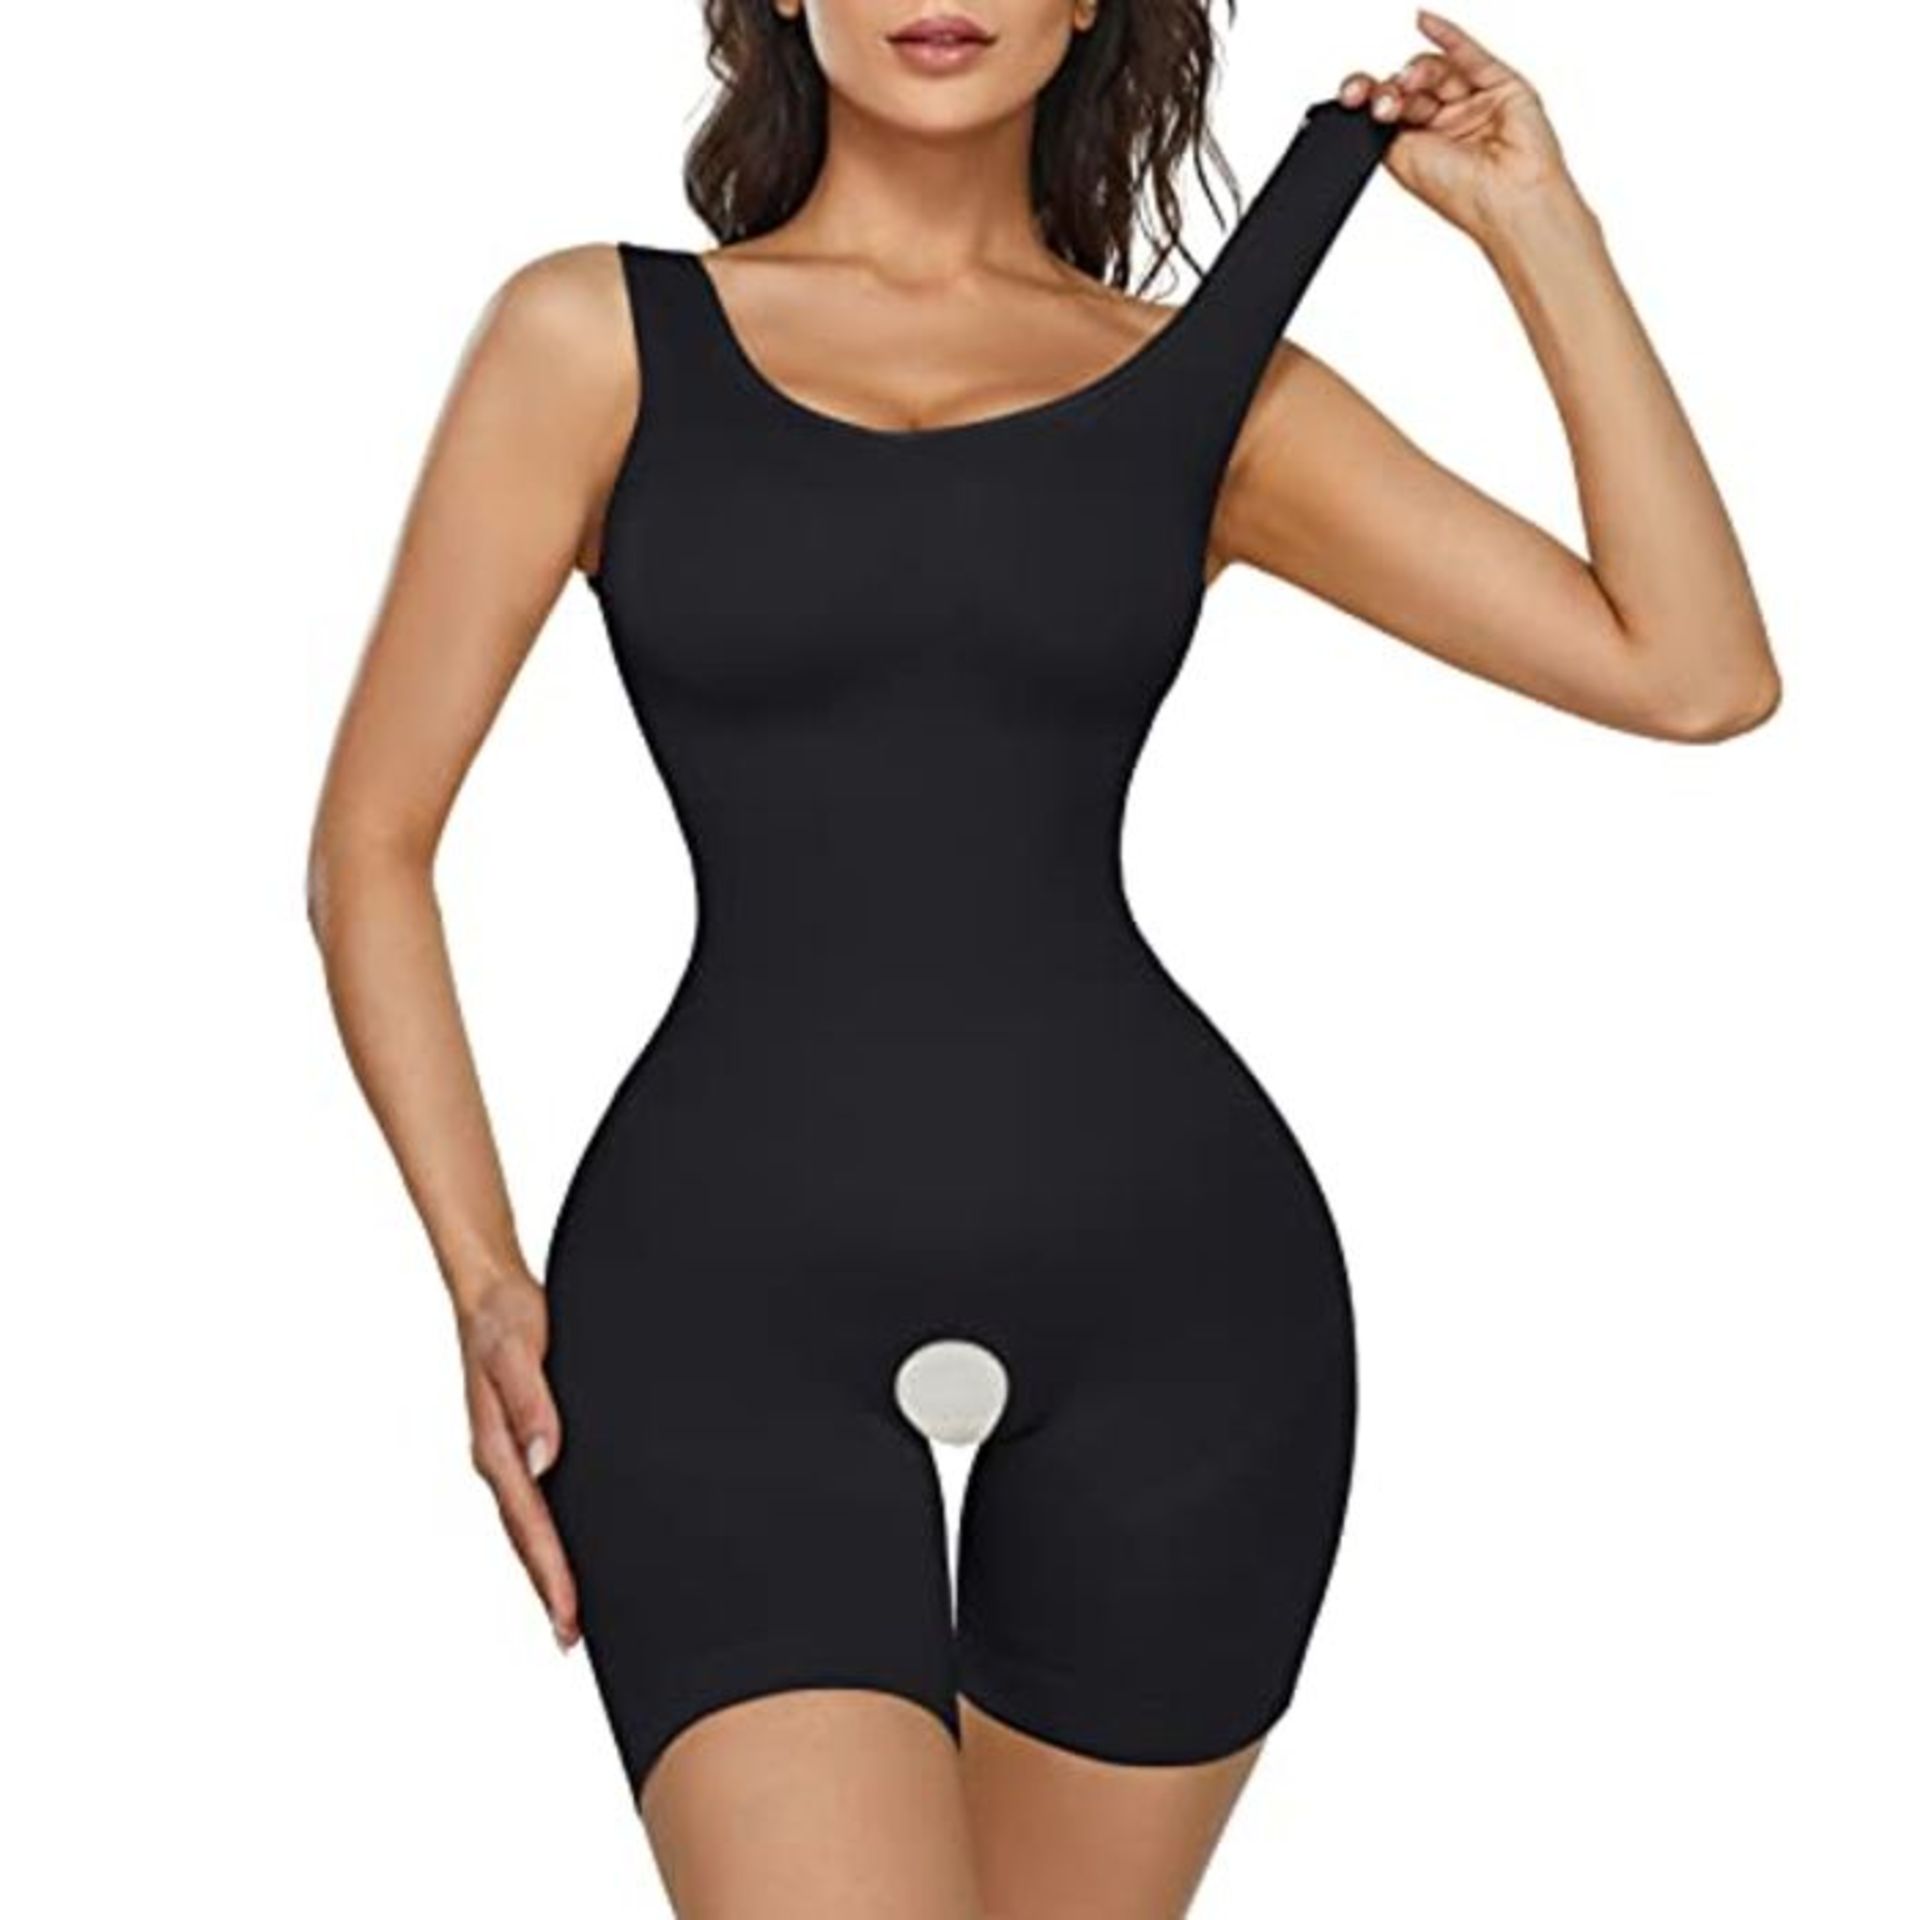 CHUMIAN Body Shaper Women's Figure-Shaping Shapewear Tummy Control Strong Shaping Body